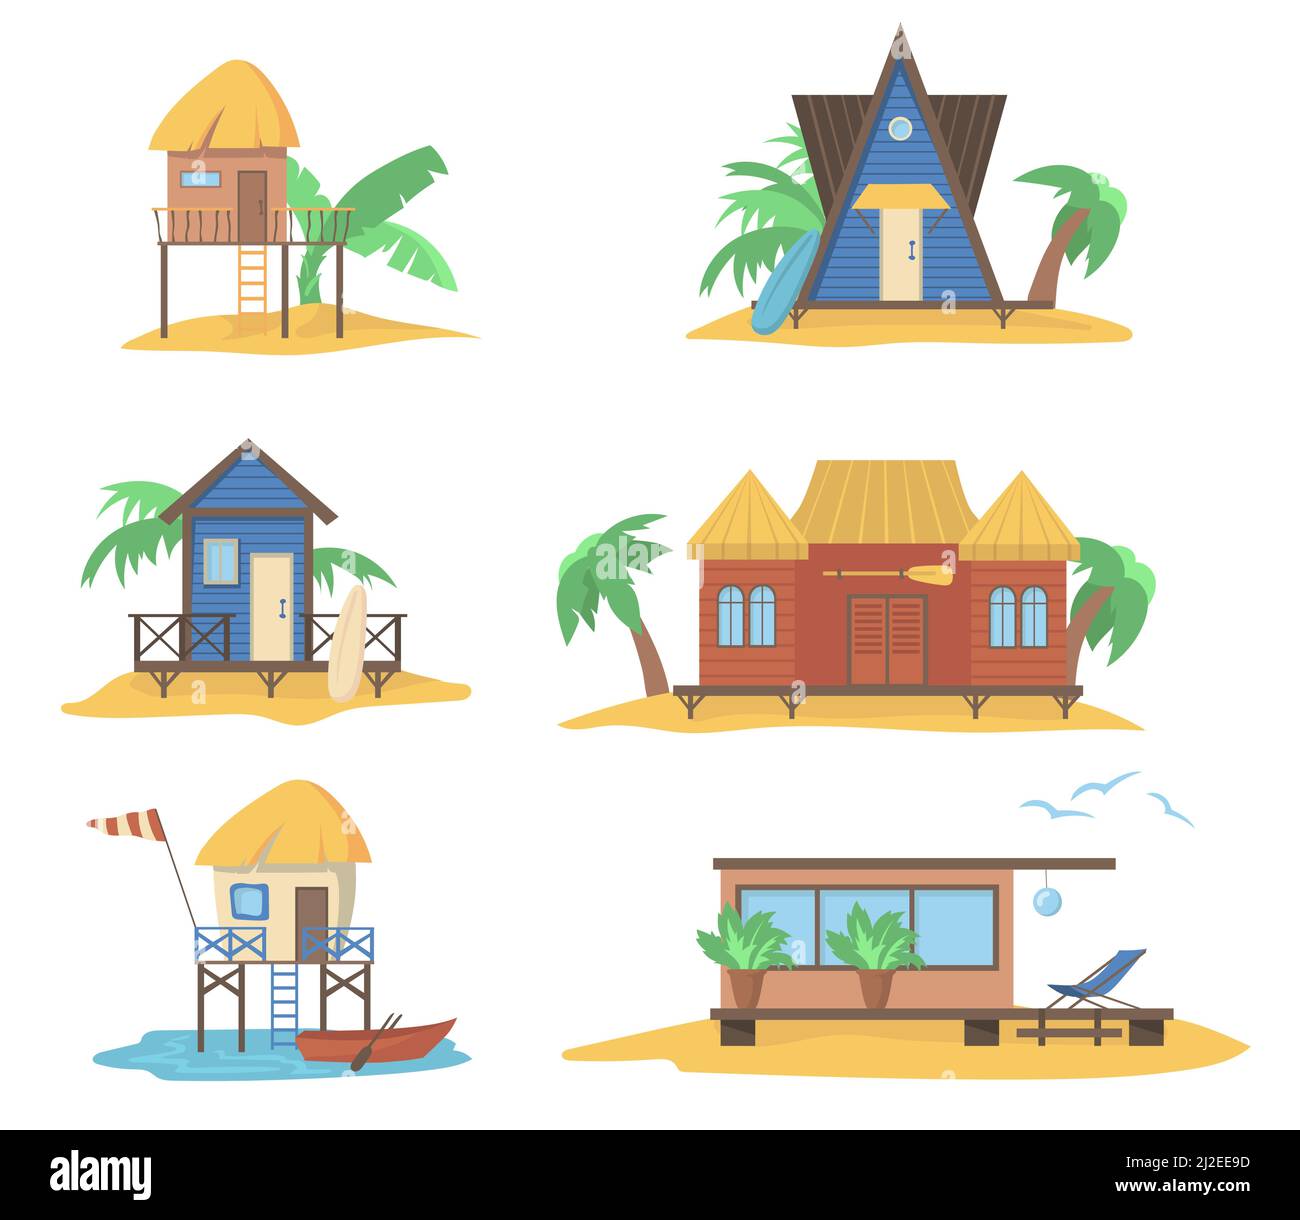 Sommerhäuser am Meer eingestellt. Holzbungalows auf Pfählen, Strandhütten mit Strohplatten mit Palmen und Surfbrettern. Vektorgrafiken für Sommerferien, c Stock Vektor